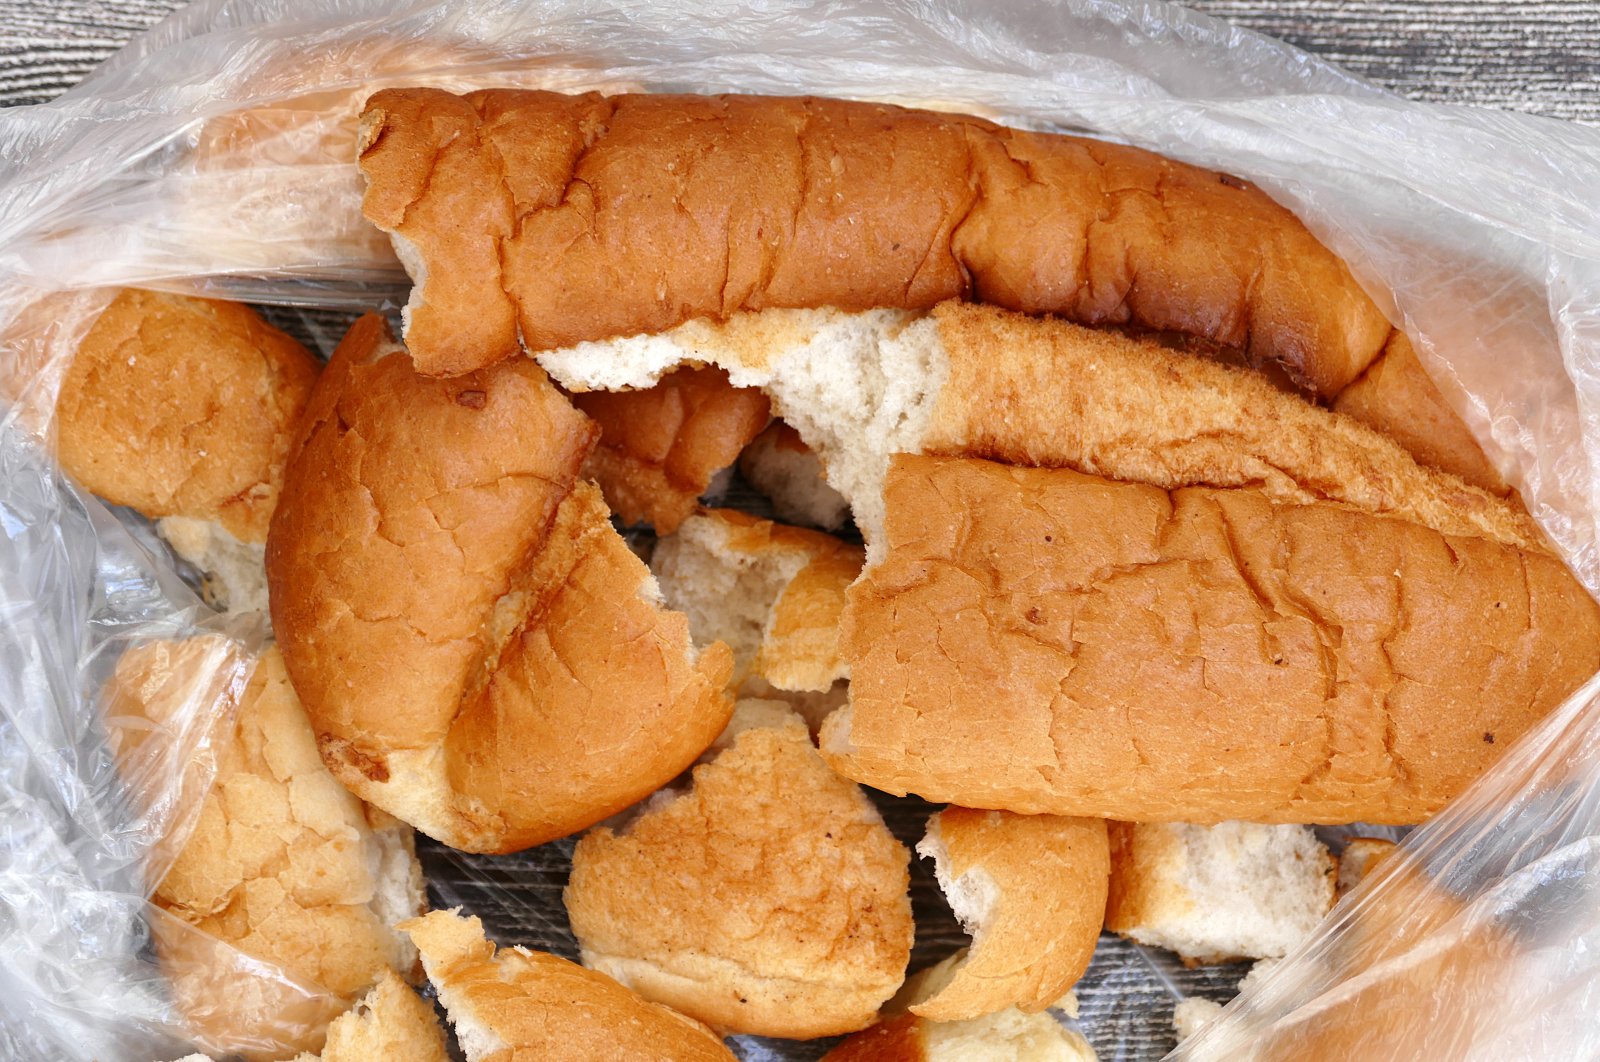 Stale bread. (Shutterstock Photo)